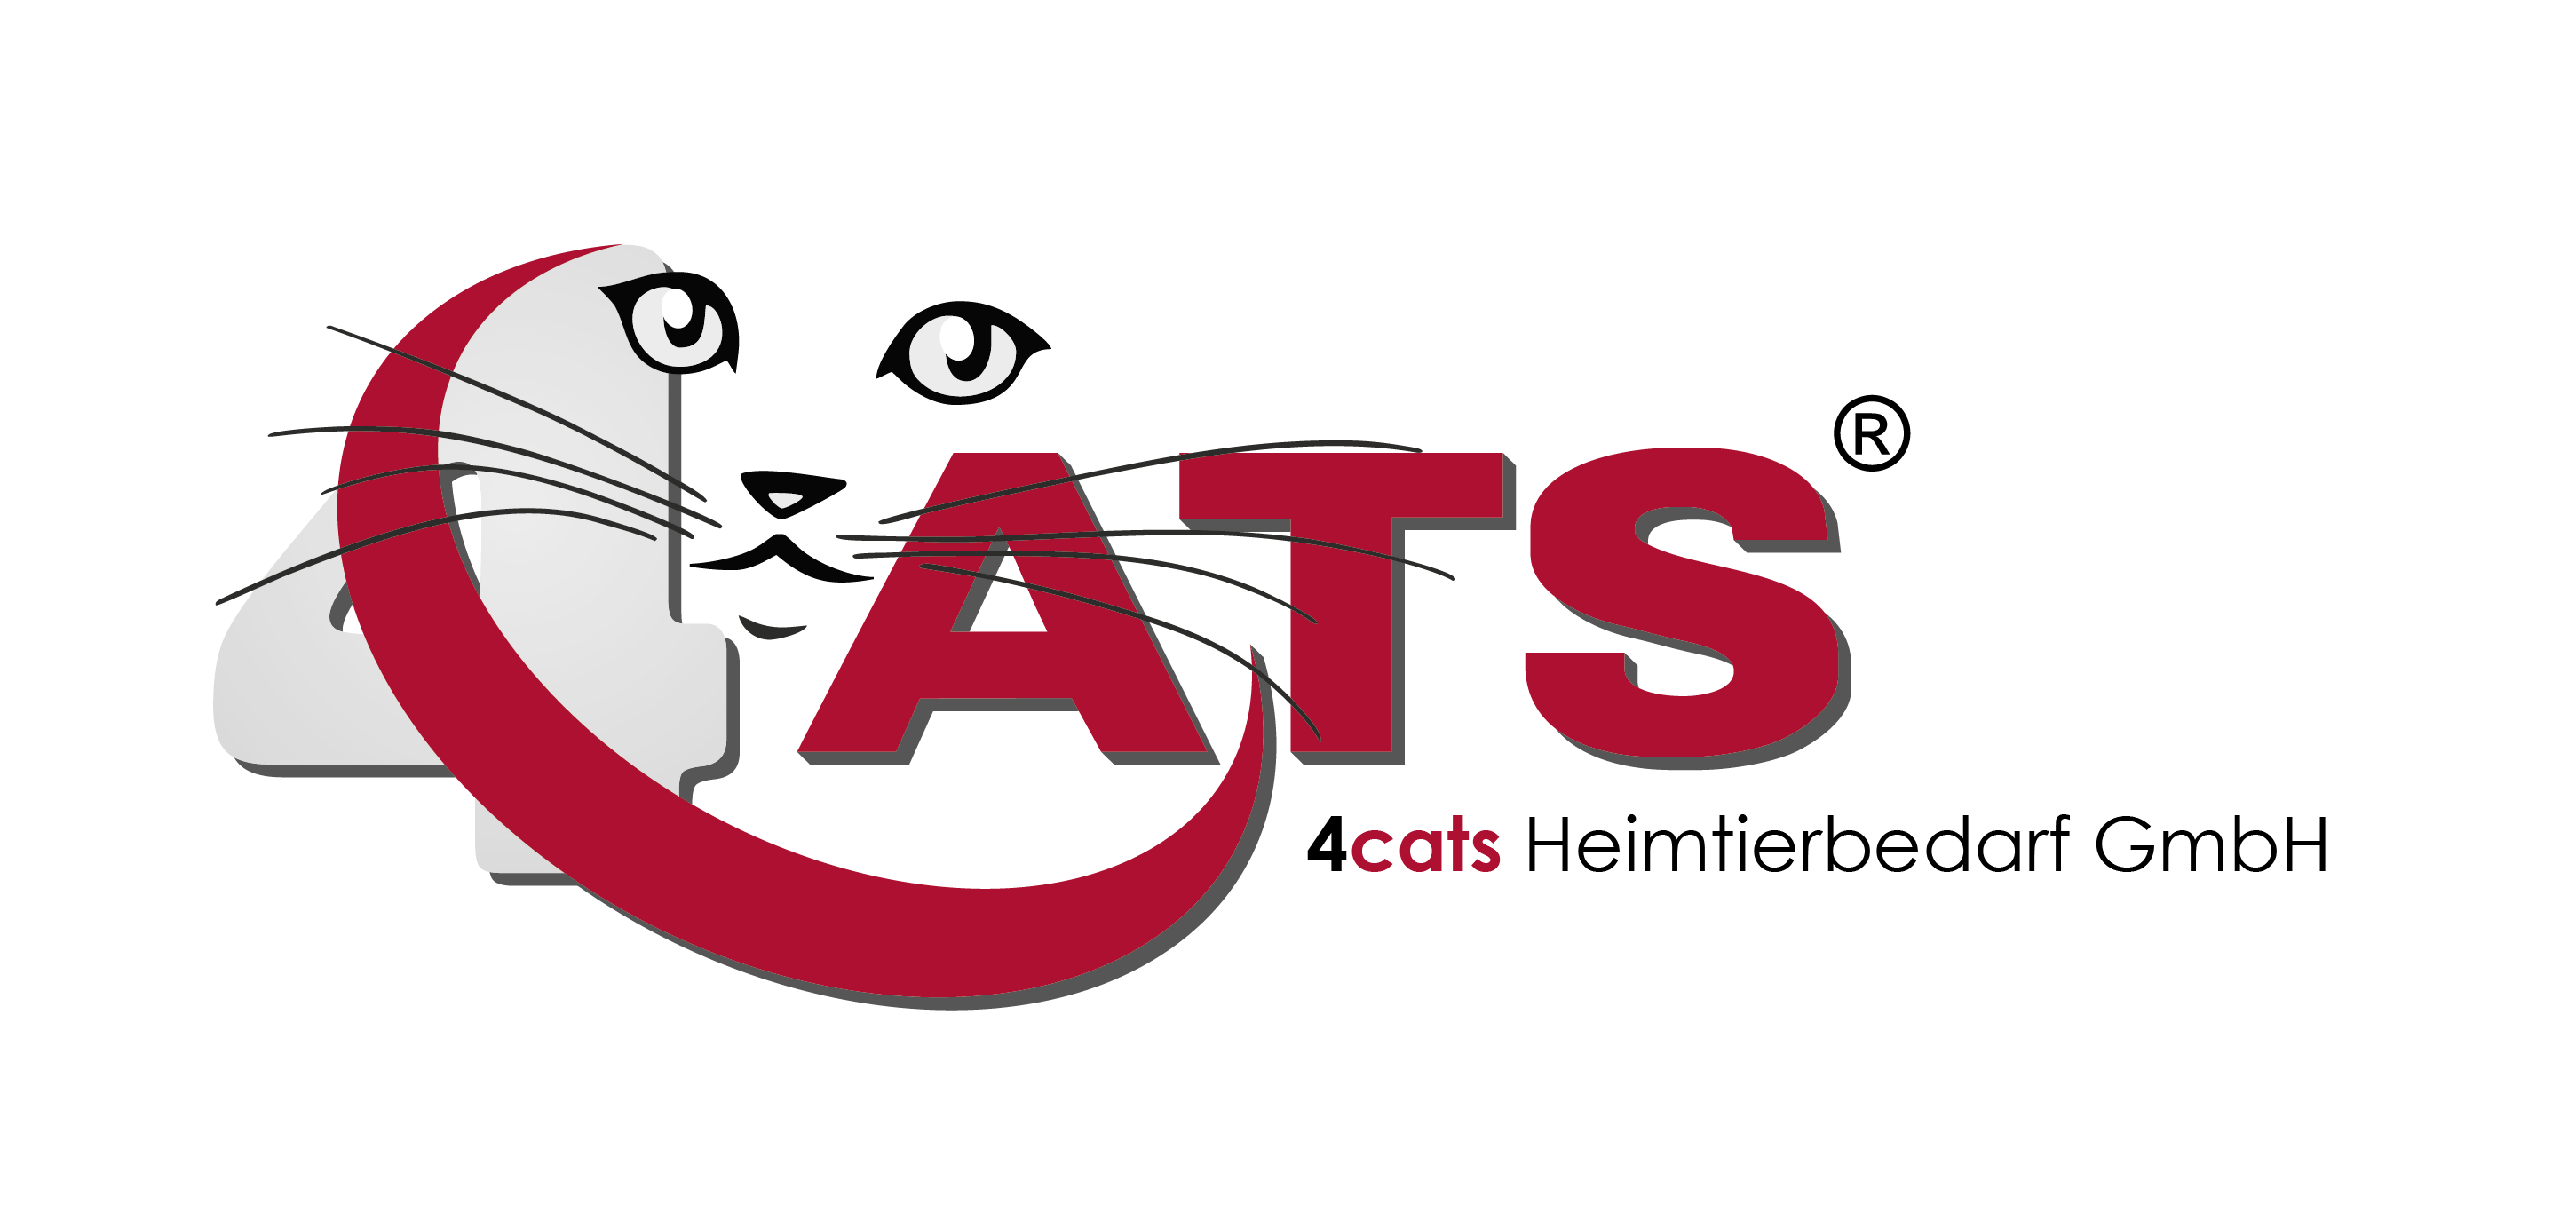 4cats Heimtierbedarf GmbH B2B Shop Portal